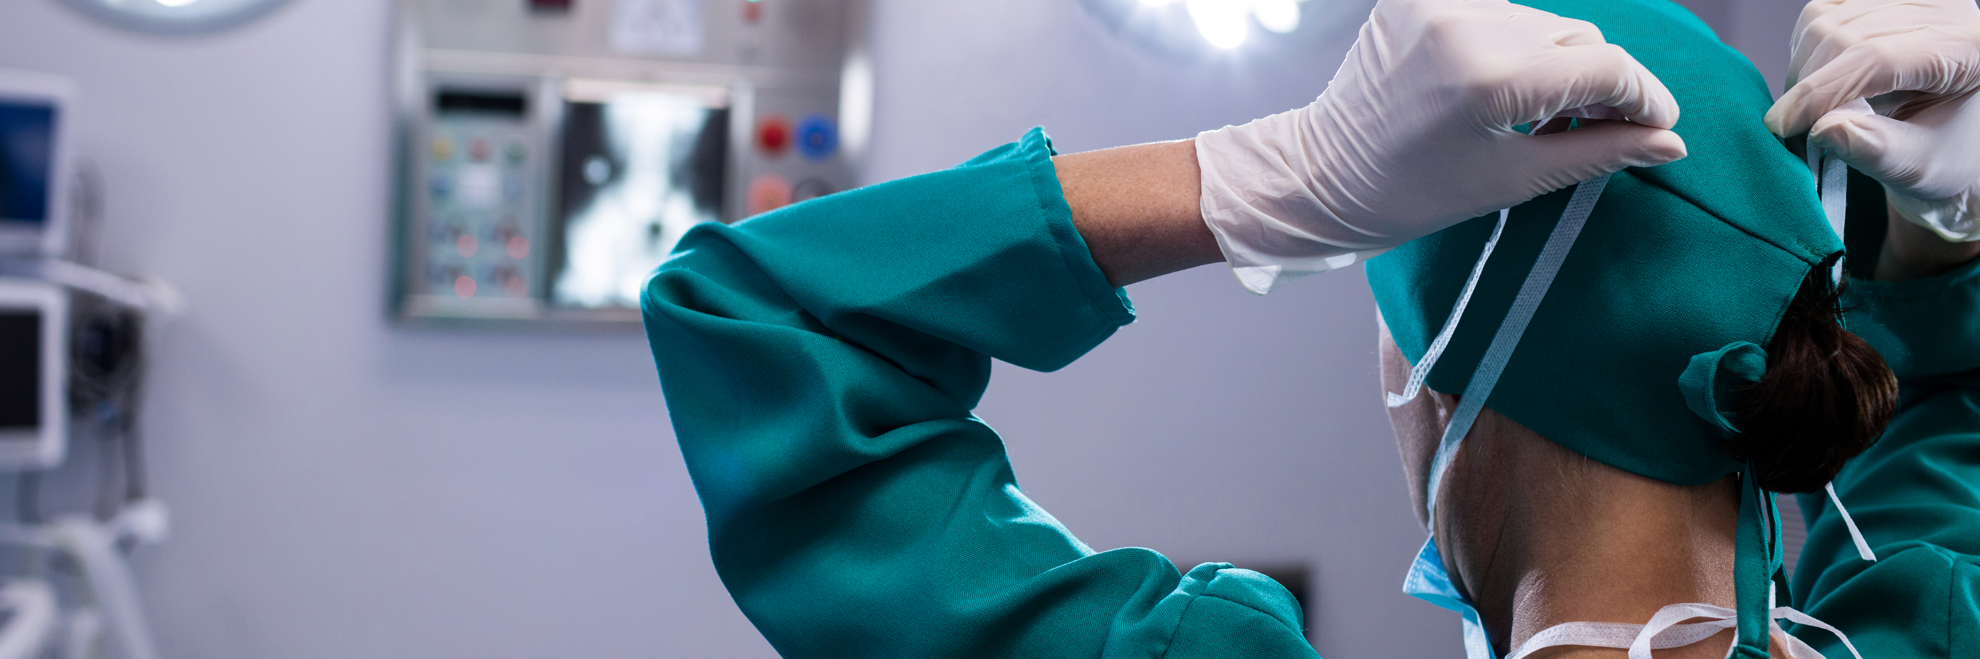 Ein Elektrophysiologe in grüner Bereichskleidung im OP-Saal eines Krankenhauses  